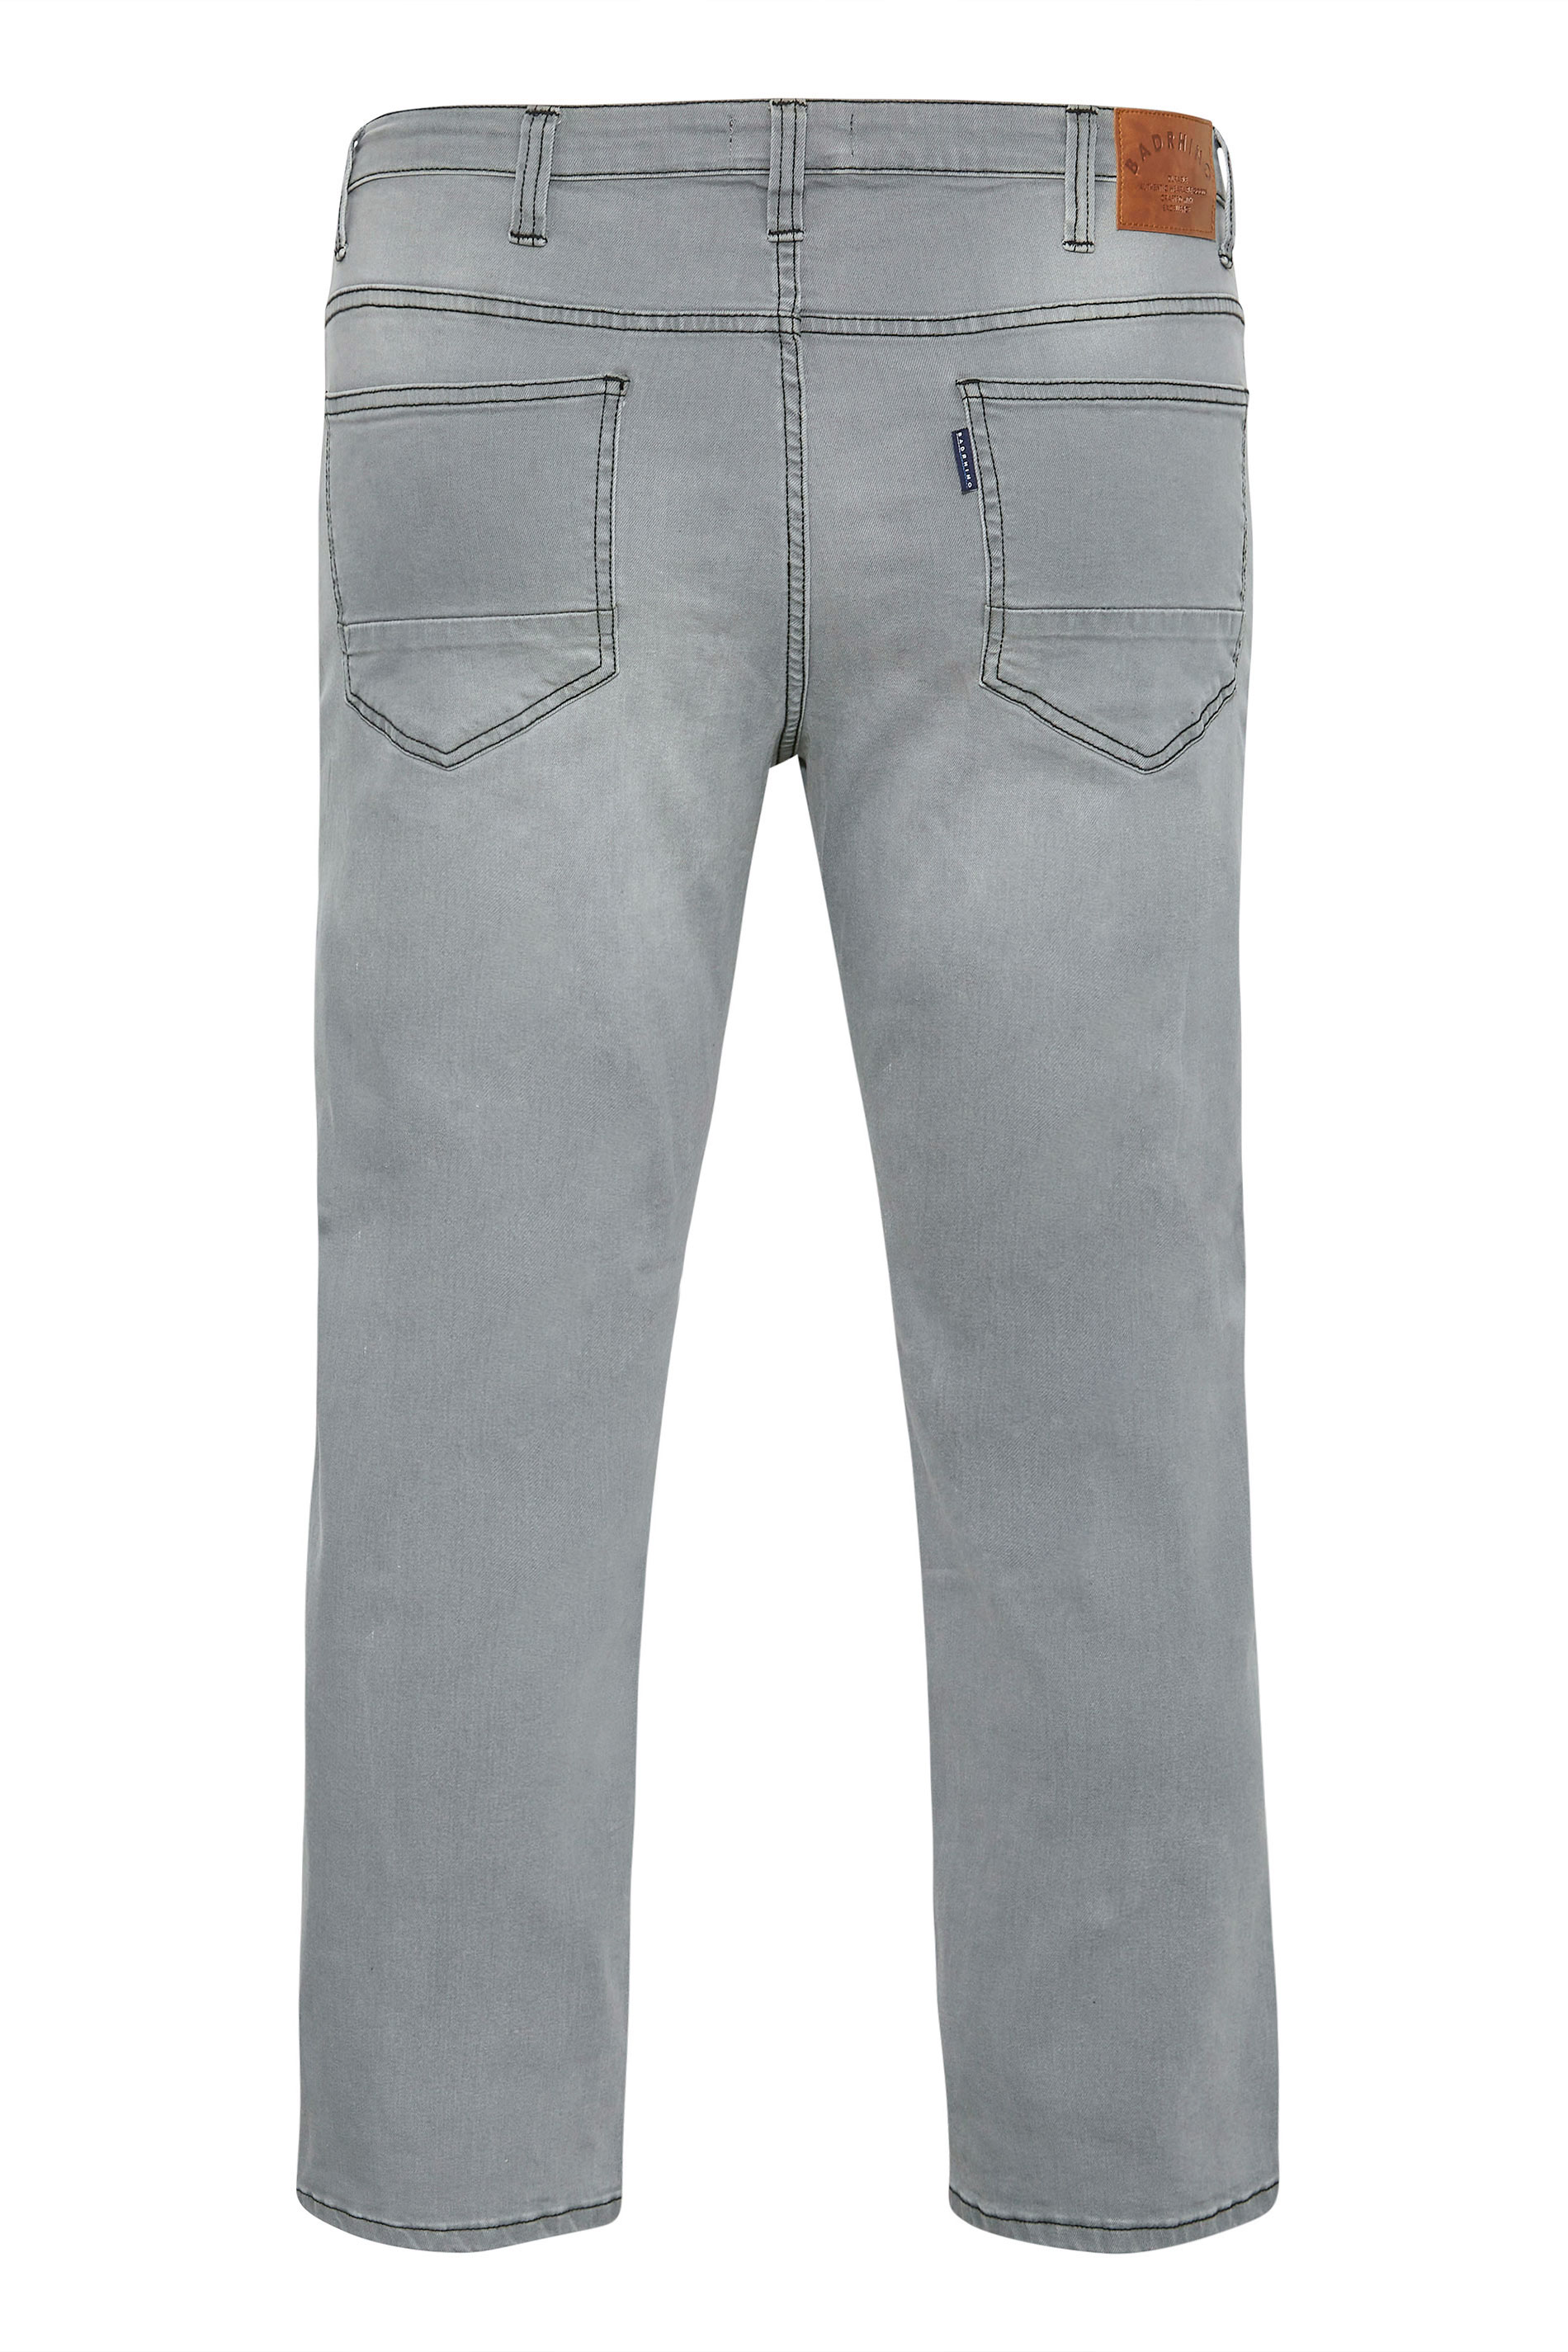 BadRhino Grey Stretch Jeans | BadRhino